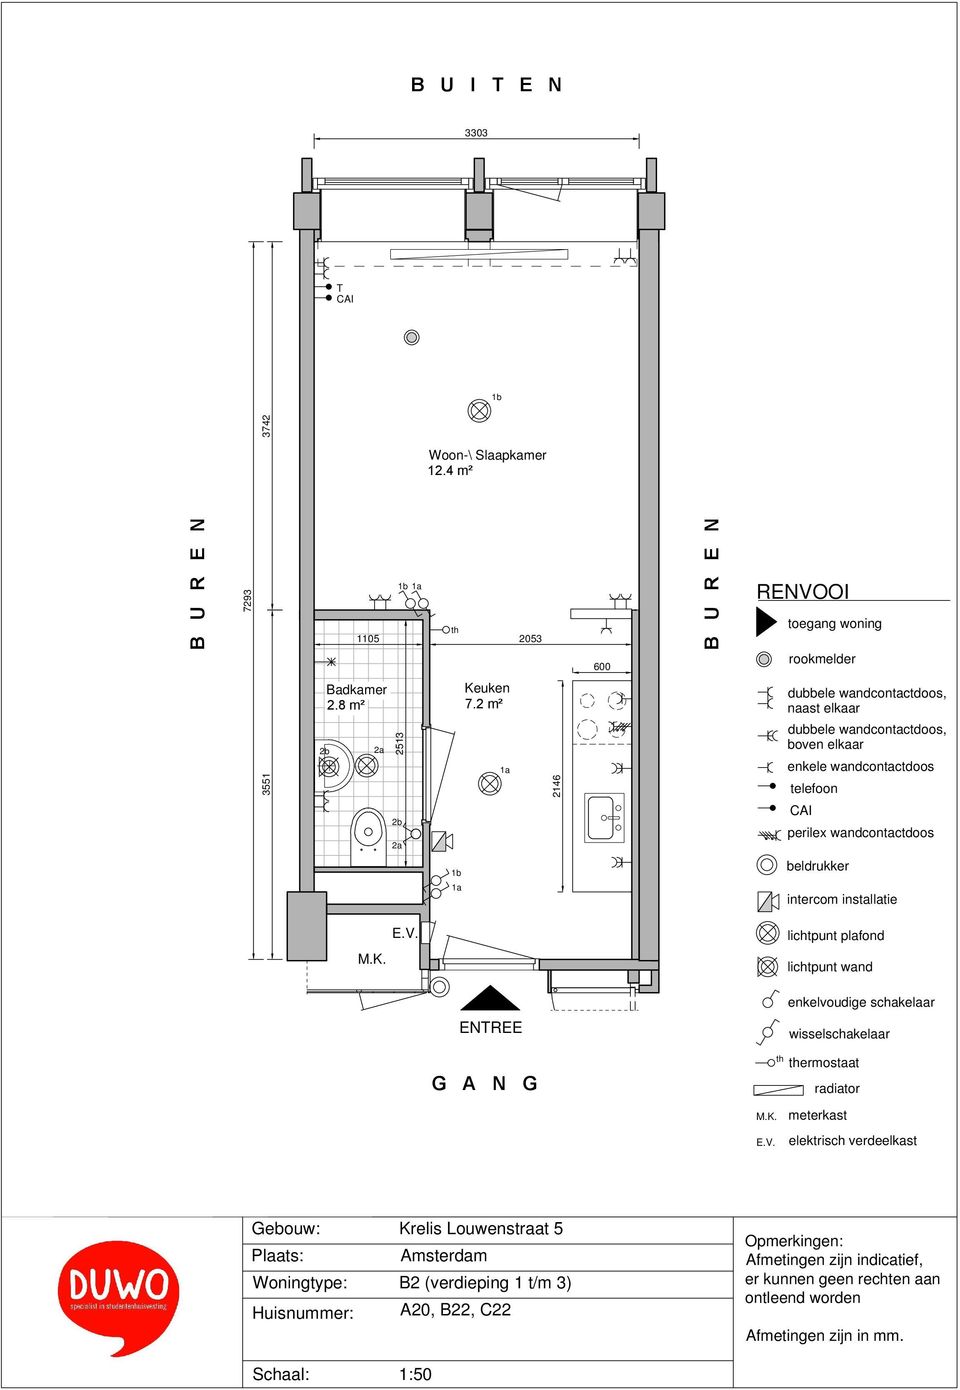 8 m² 2513 Keuken 7.